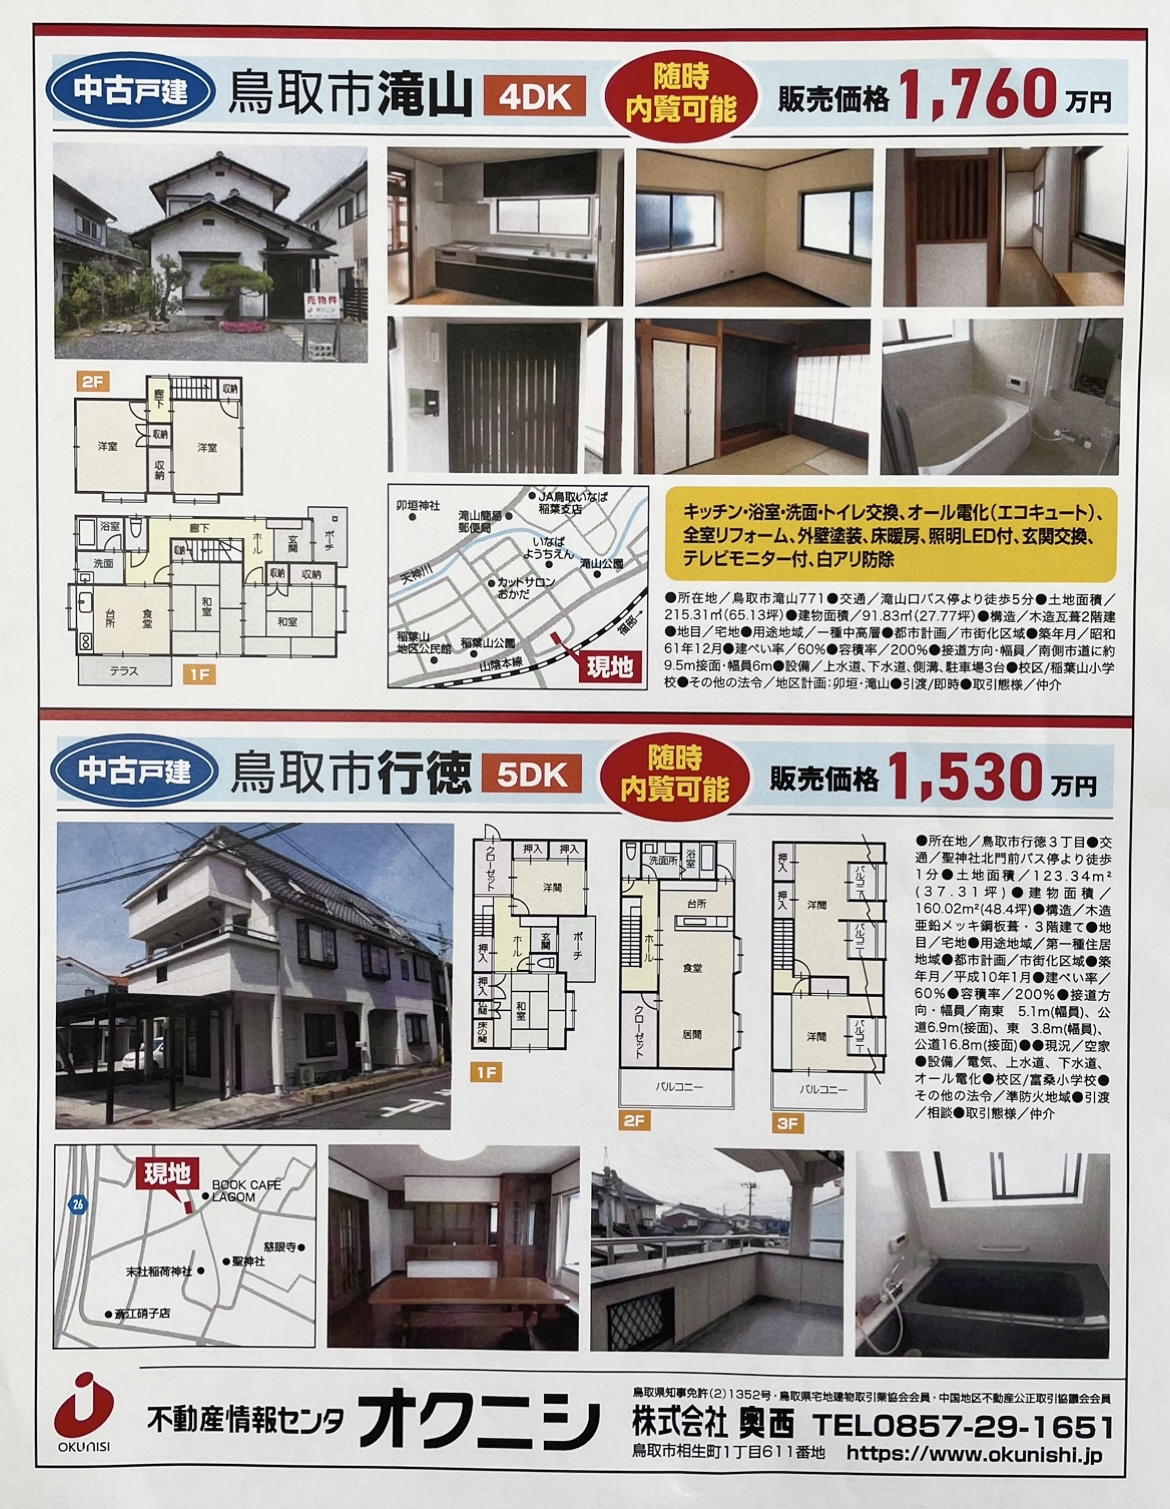 4月27日、日本海新聞にチラシが入ります